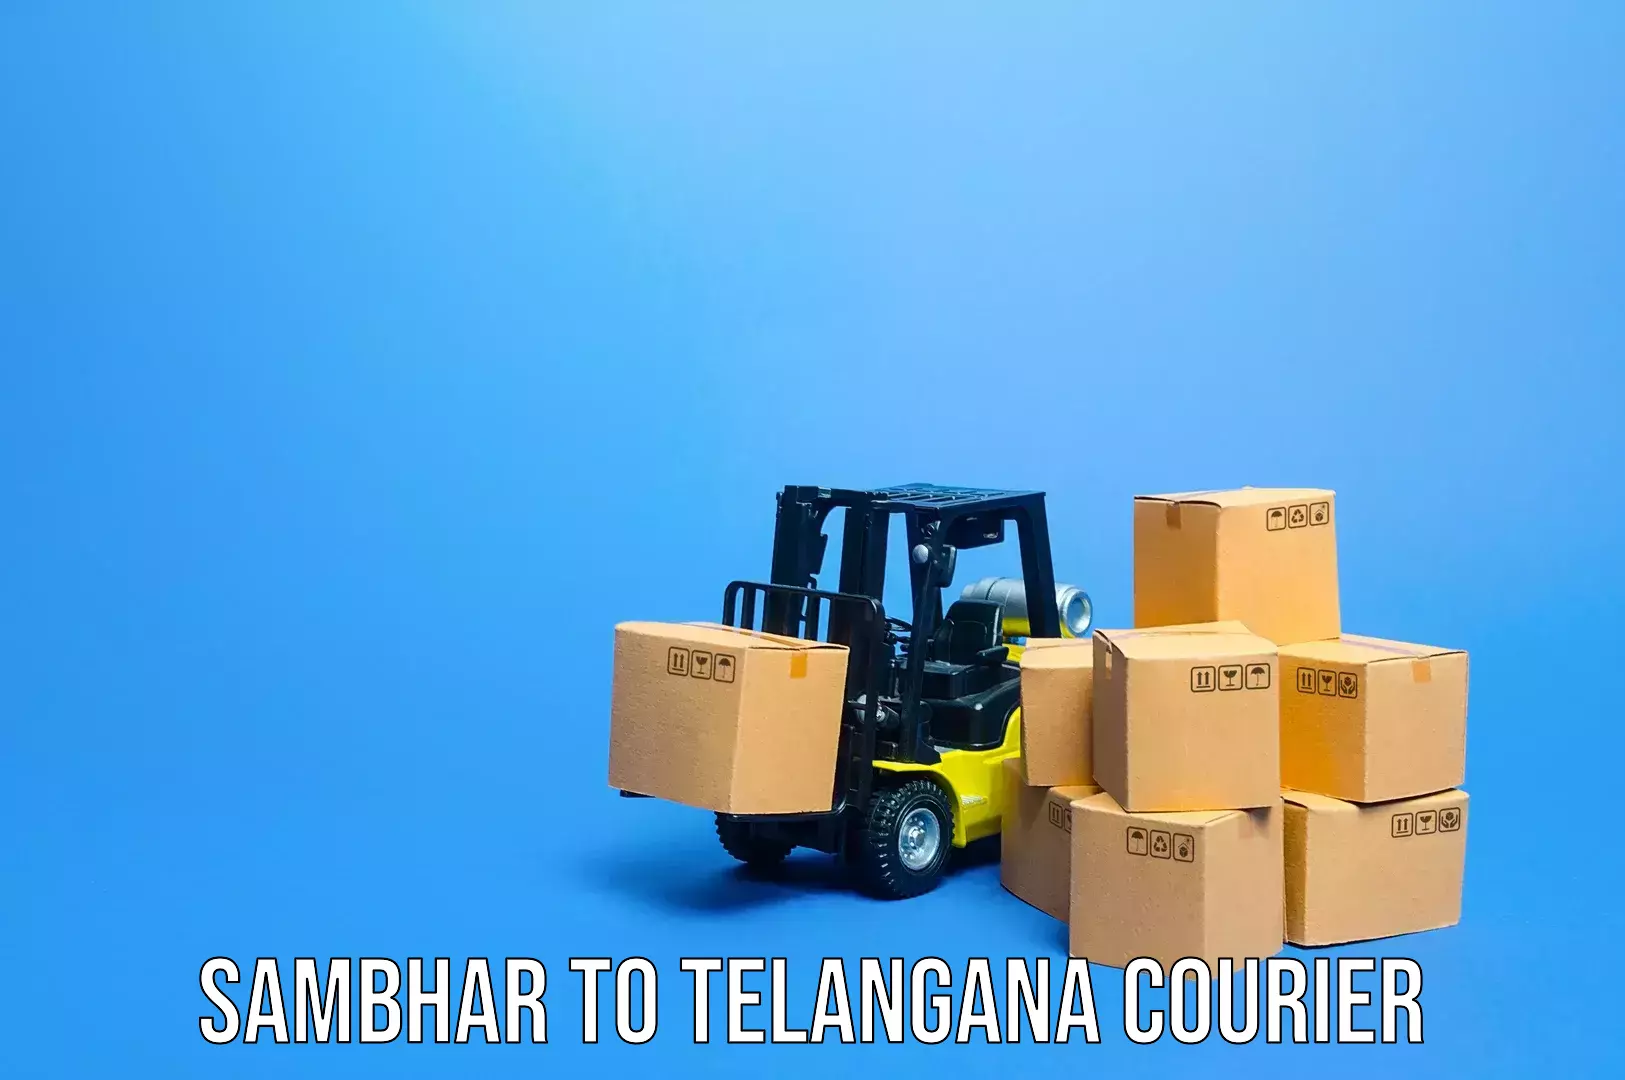 Baggage transport cost in Sambhar to Telangana